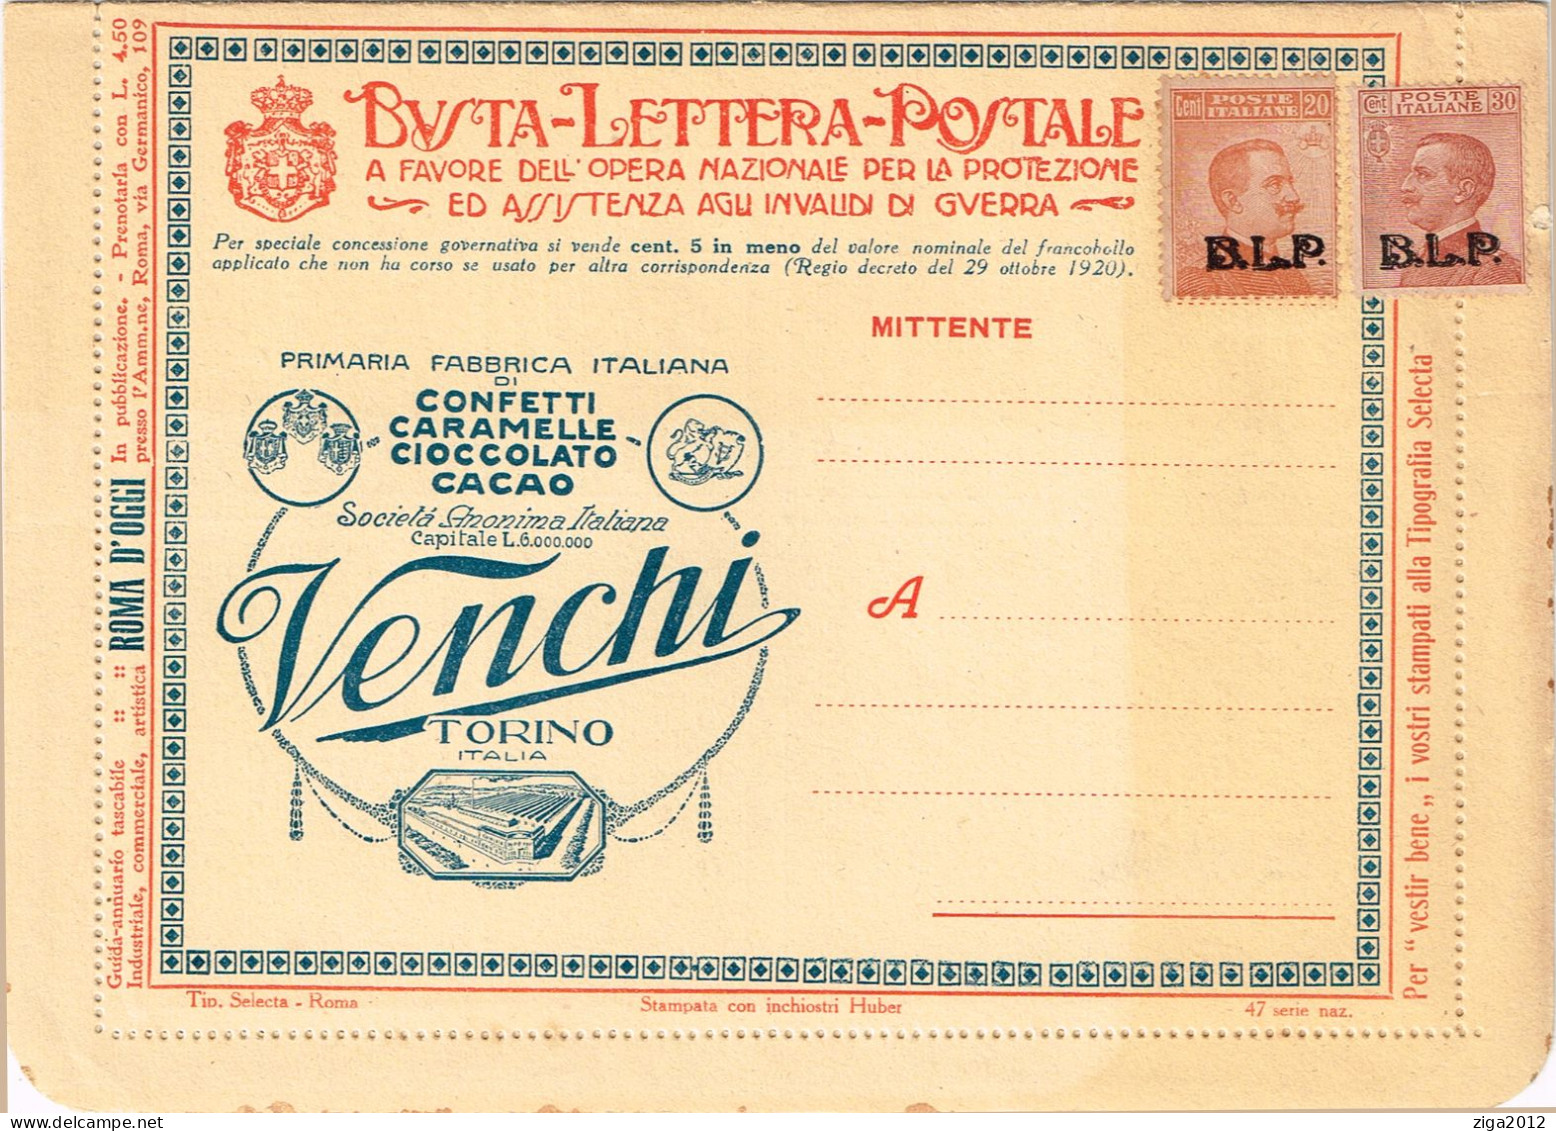 ITALY 1923 B.L.P. BUSTA LETTERA POSTALE CON C.20 III° TIPO + C.30 III° TIPO NUOVA E COMPLETA - Reclame